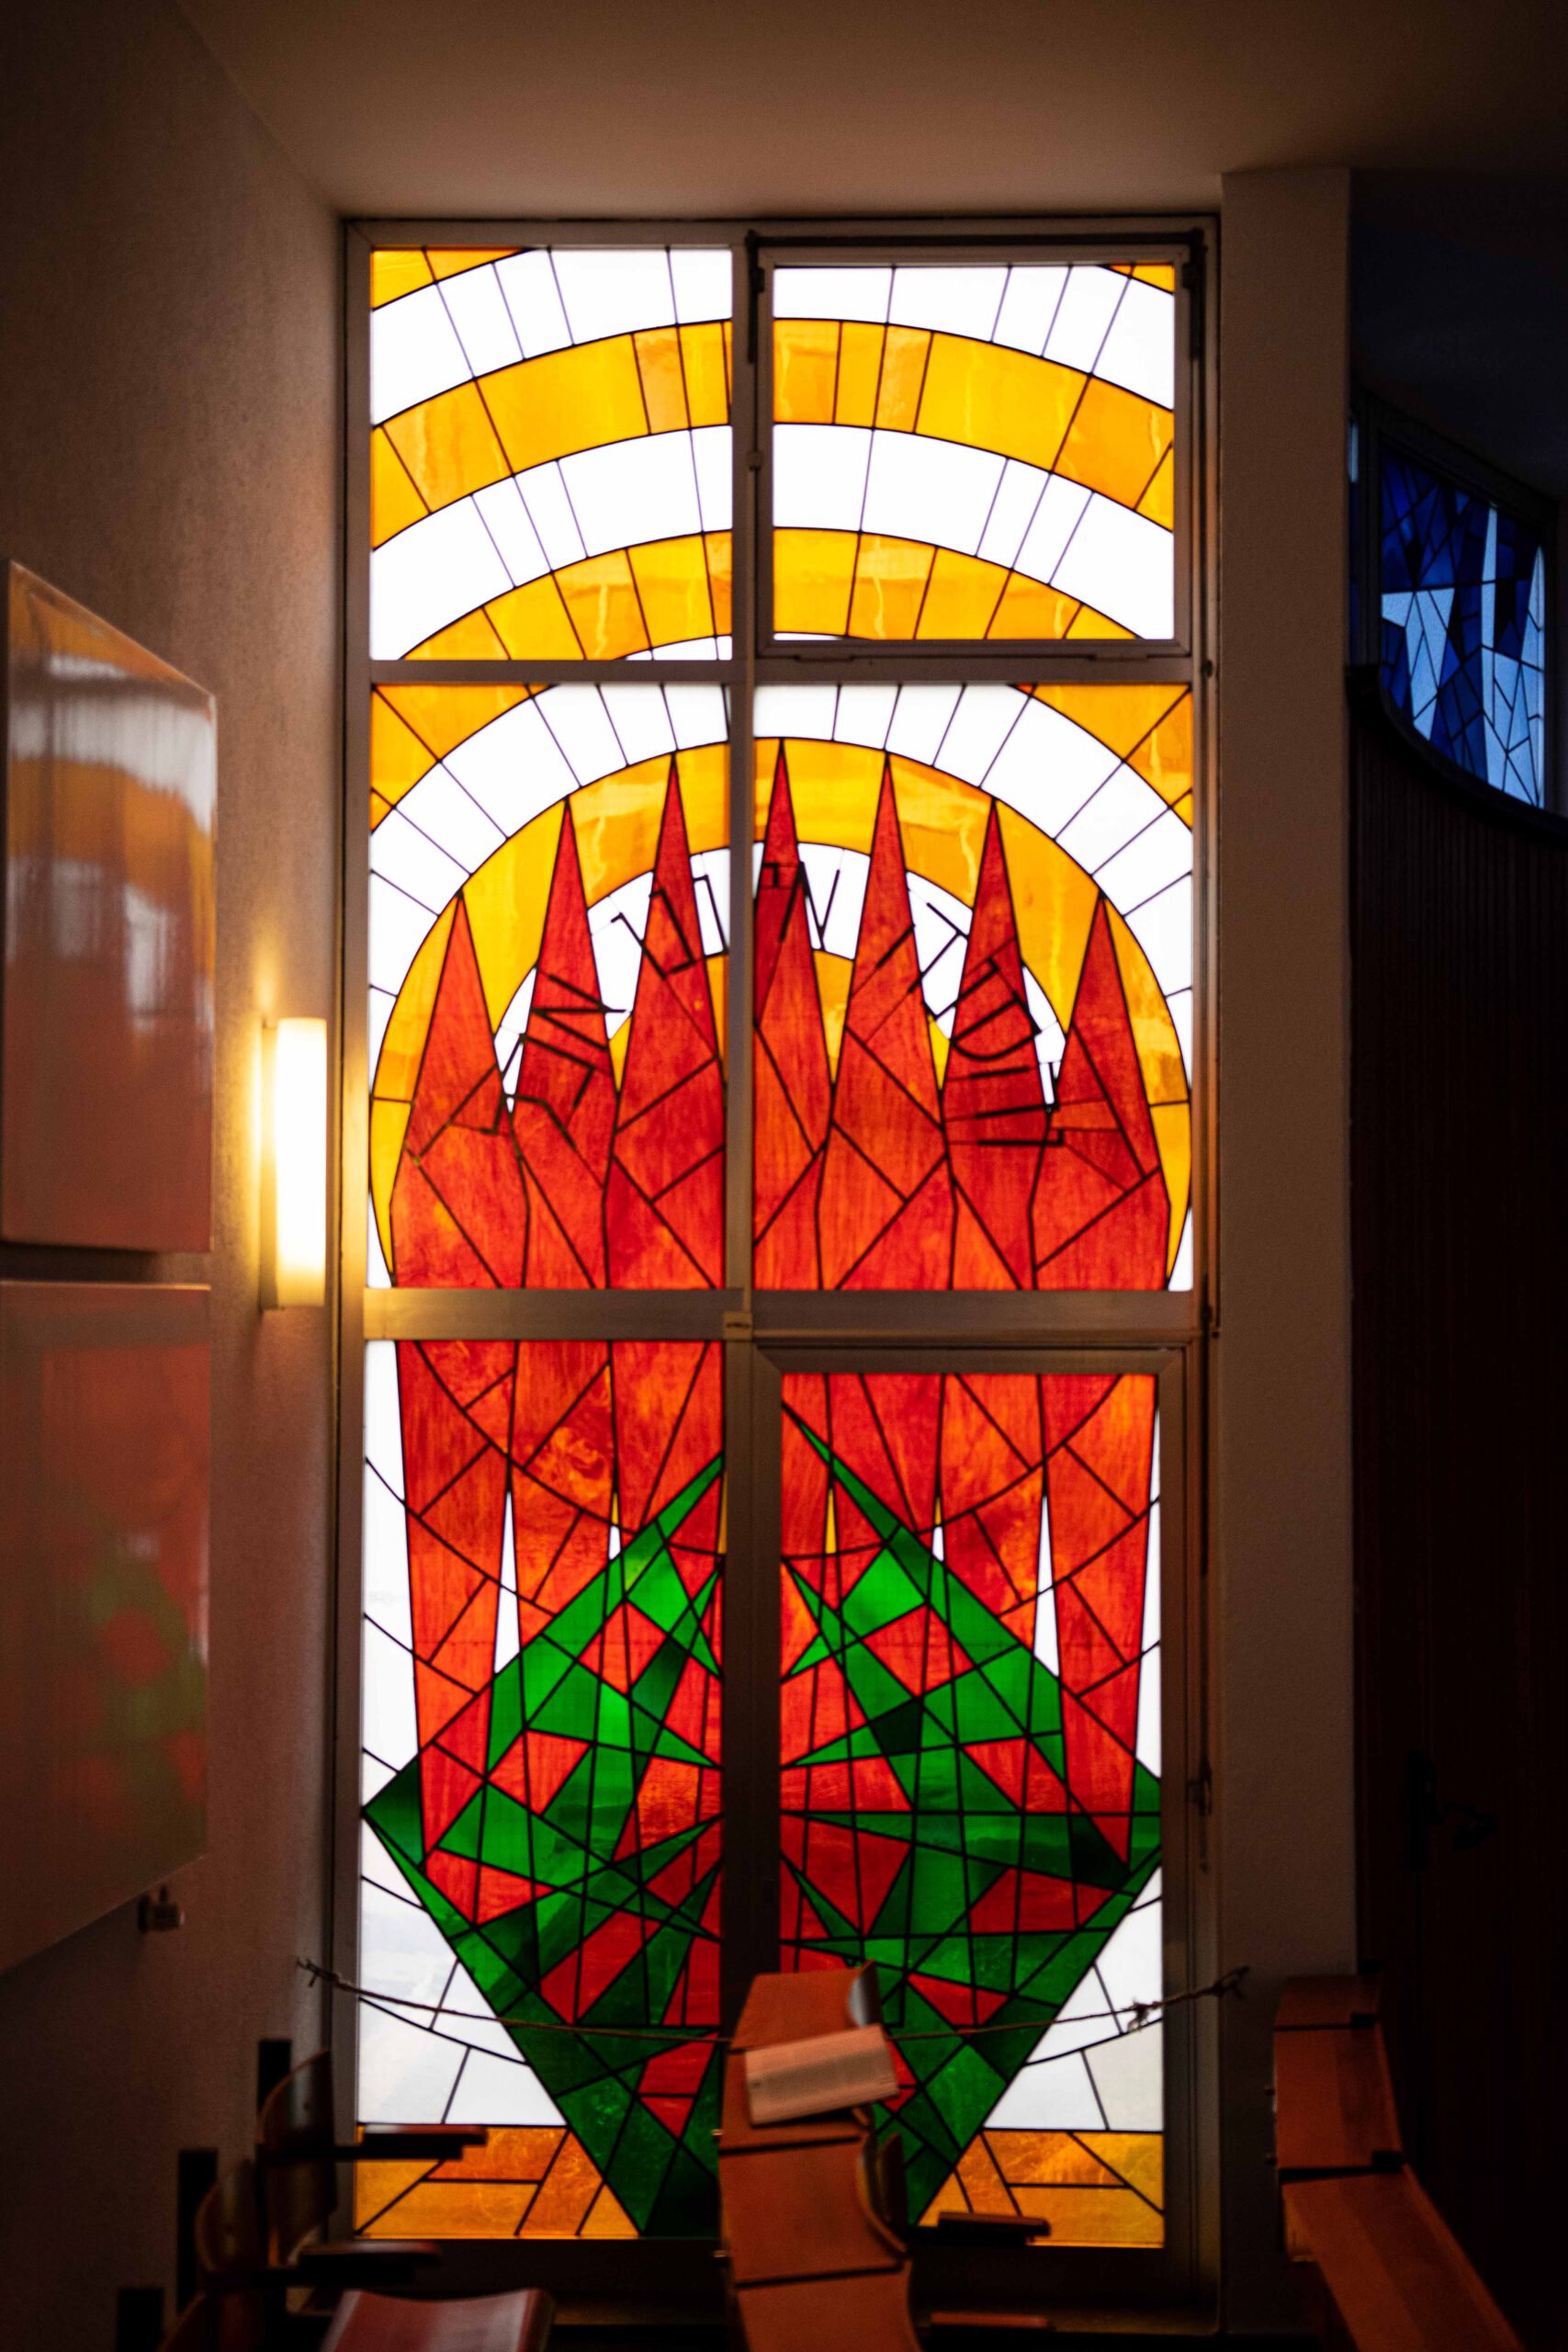 Vitraux au premier étage de la synagogue de Wiesbaden. Photographe : Thomas Greiner